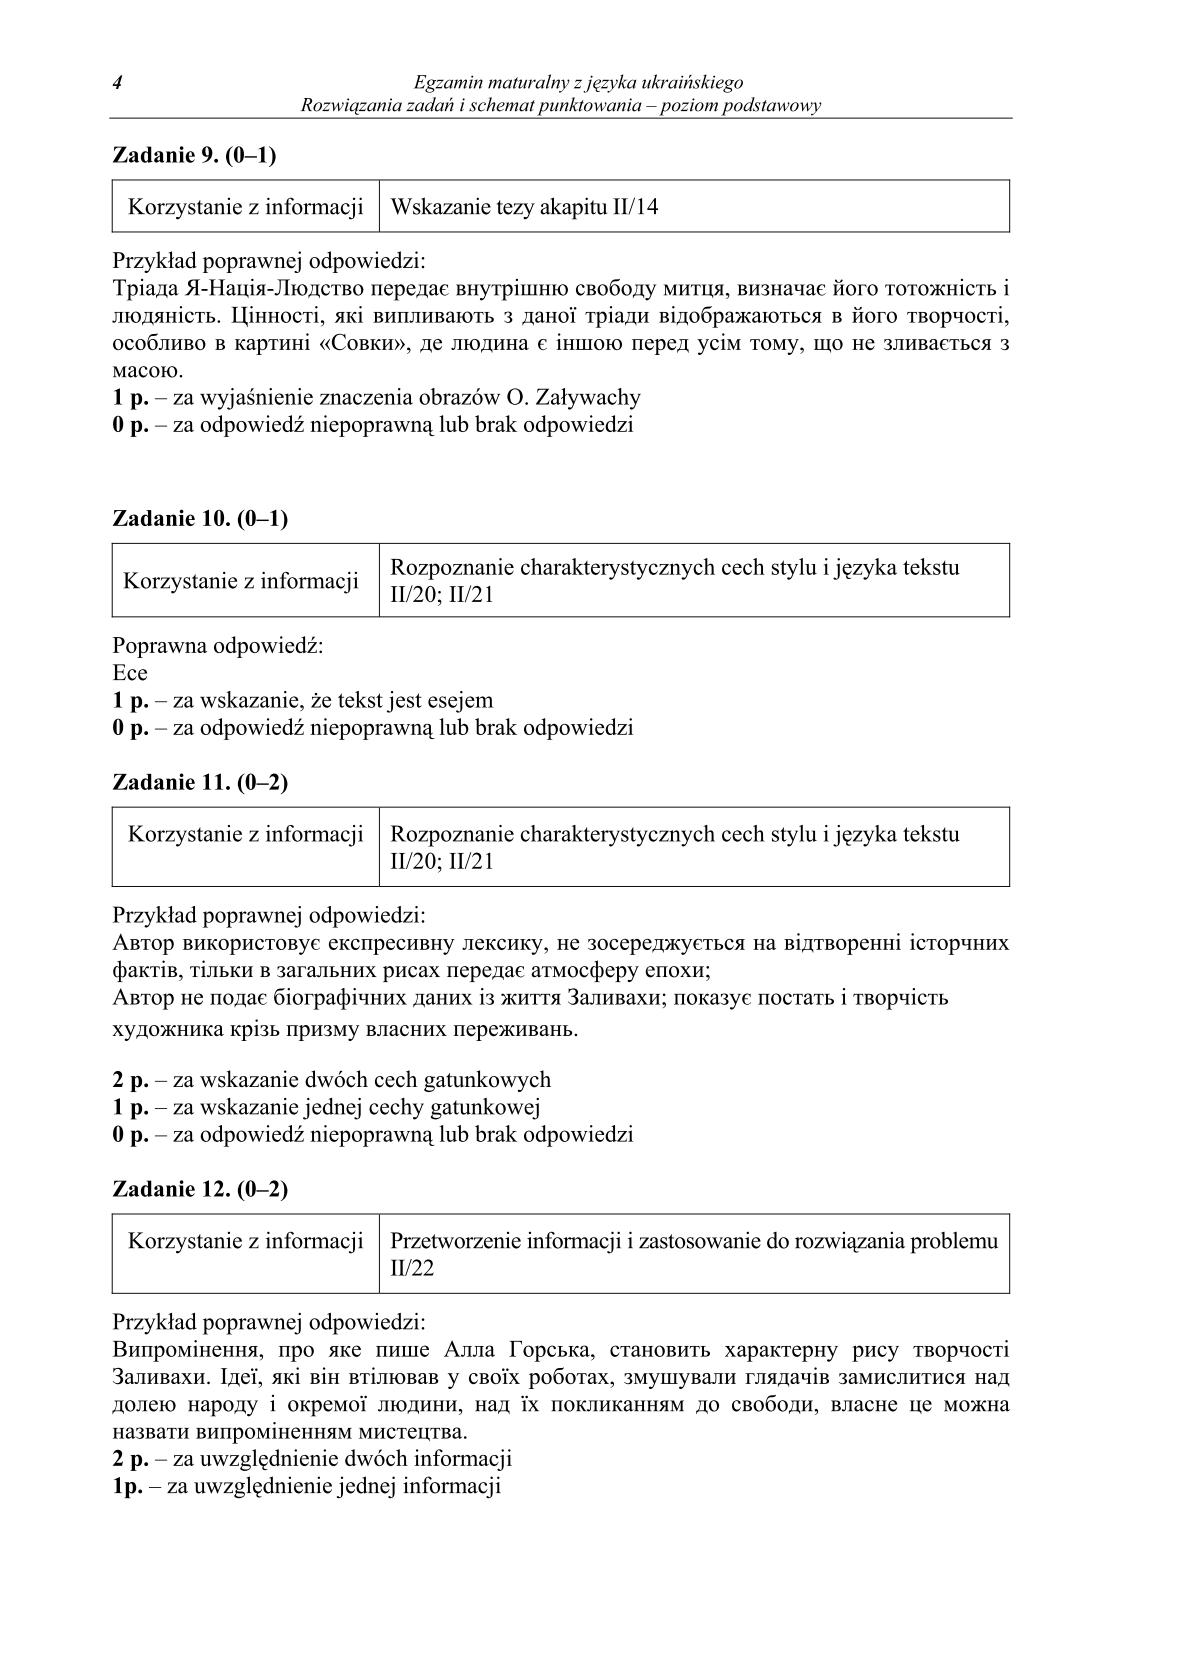 odpowiedzi-jezyk-ukrainski-poziom-podstawowy-matura-2014-str.4